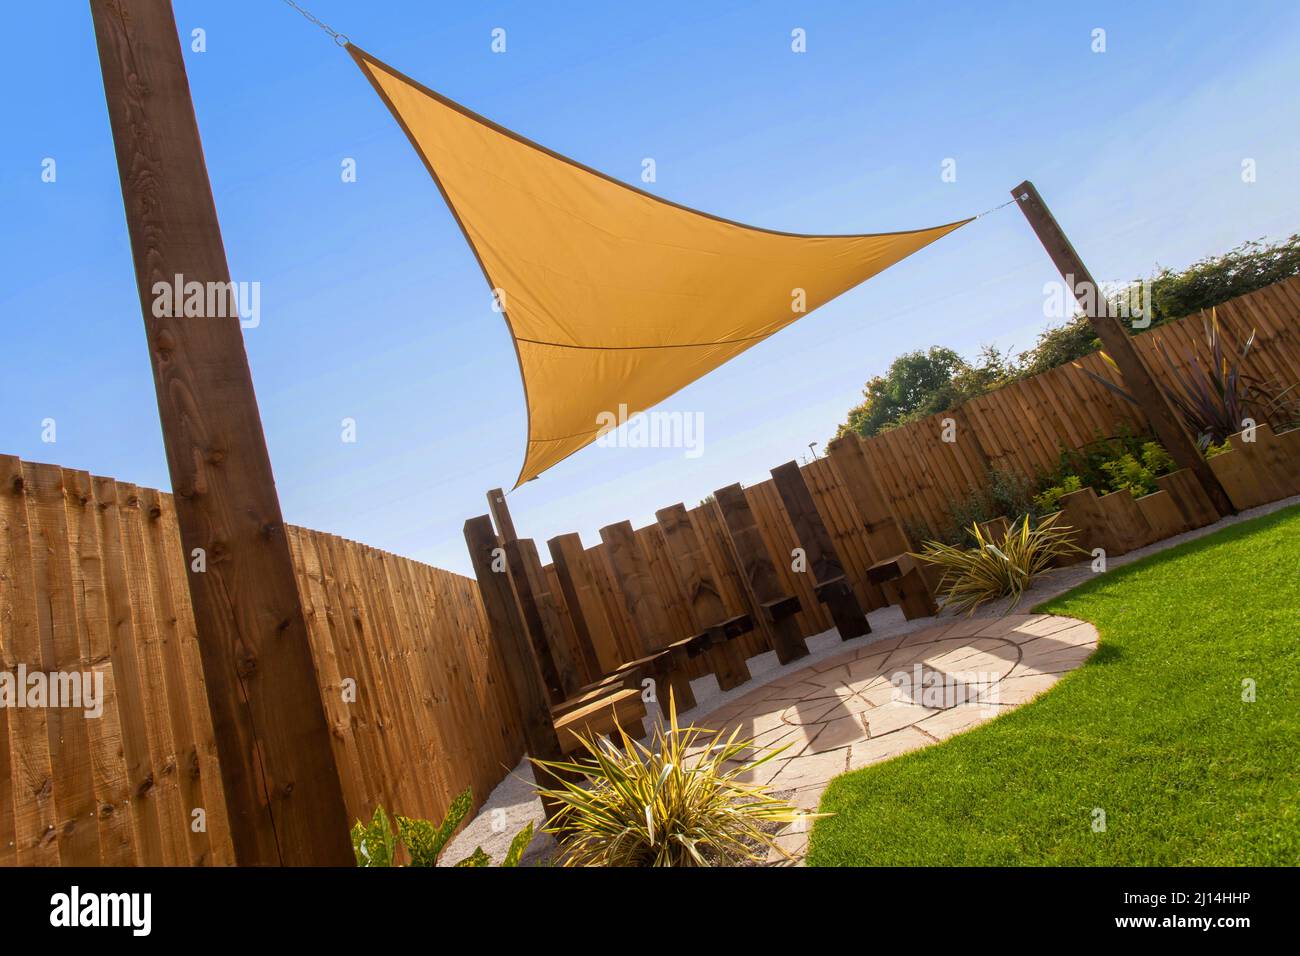 Ein gelber Sonnenschirm mit Drachen oder Segeln, der von Pfosten in einem sonnigen Garten und blauem Himmel unterstützt wird. Stockfoto